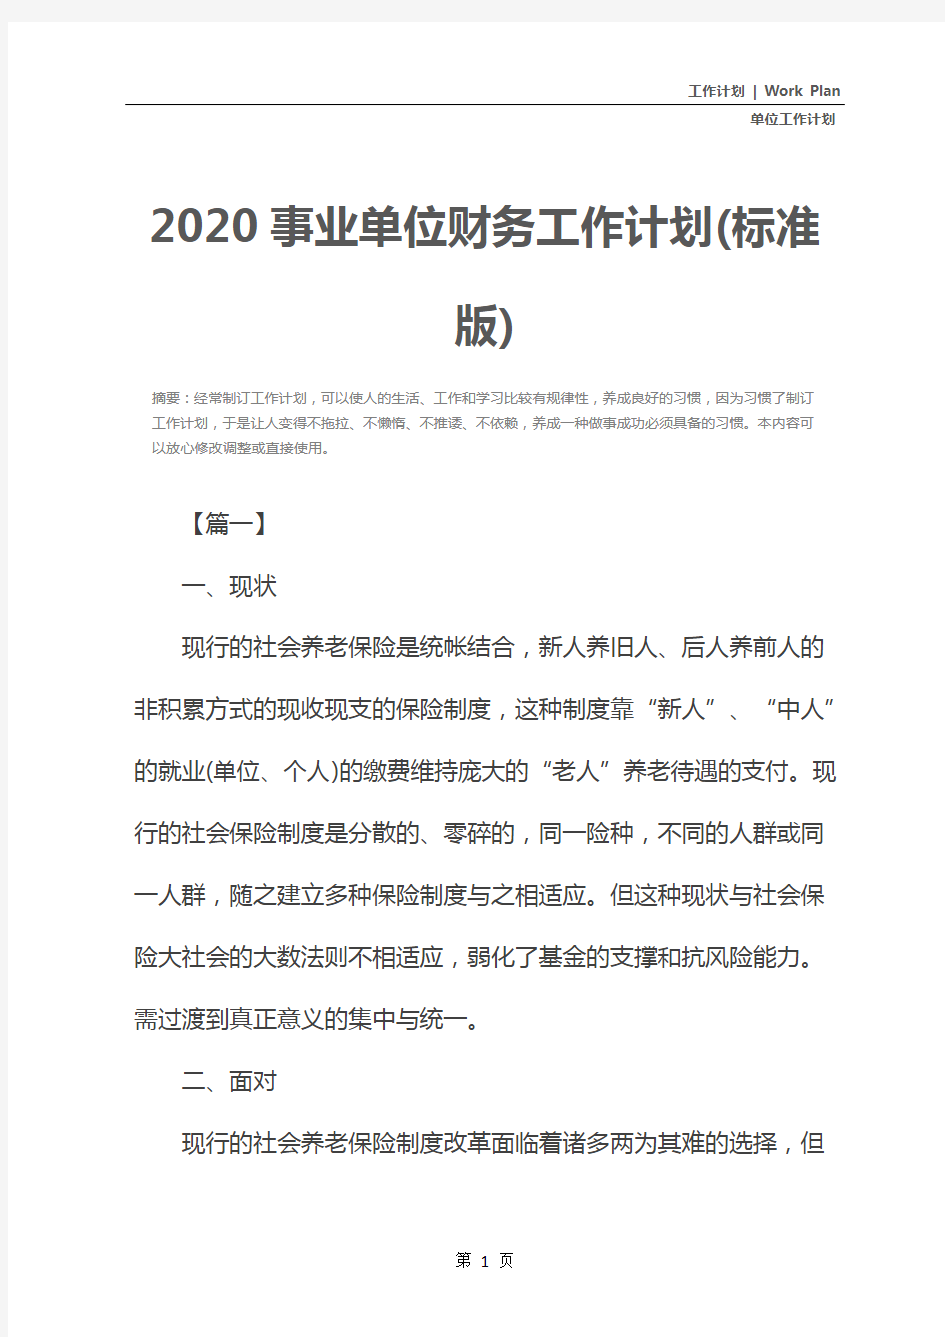 2020事业单位财务工作计划(标准版)